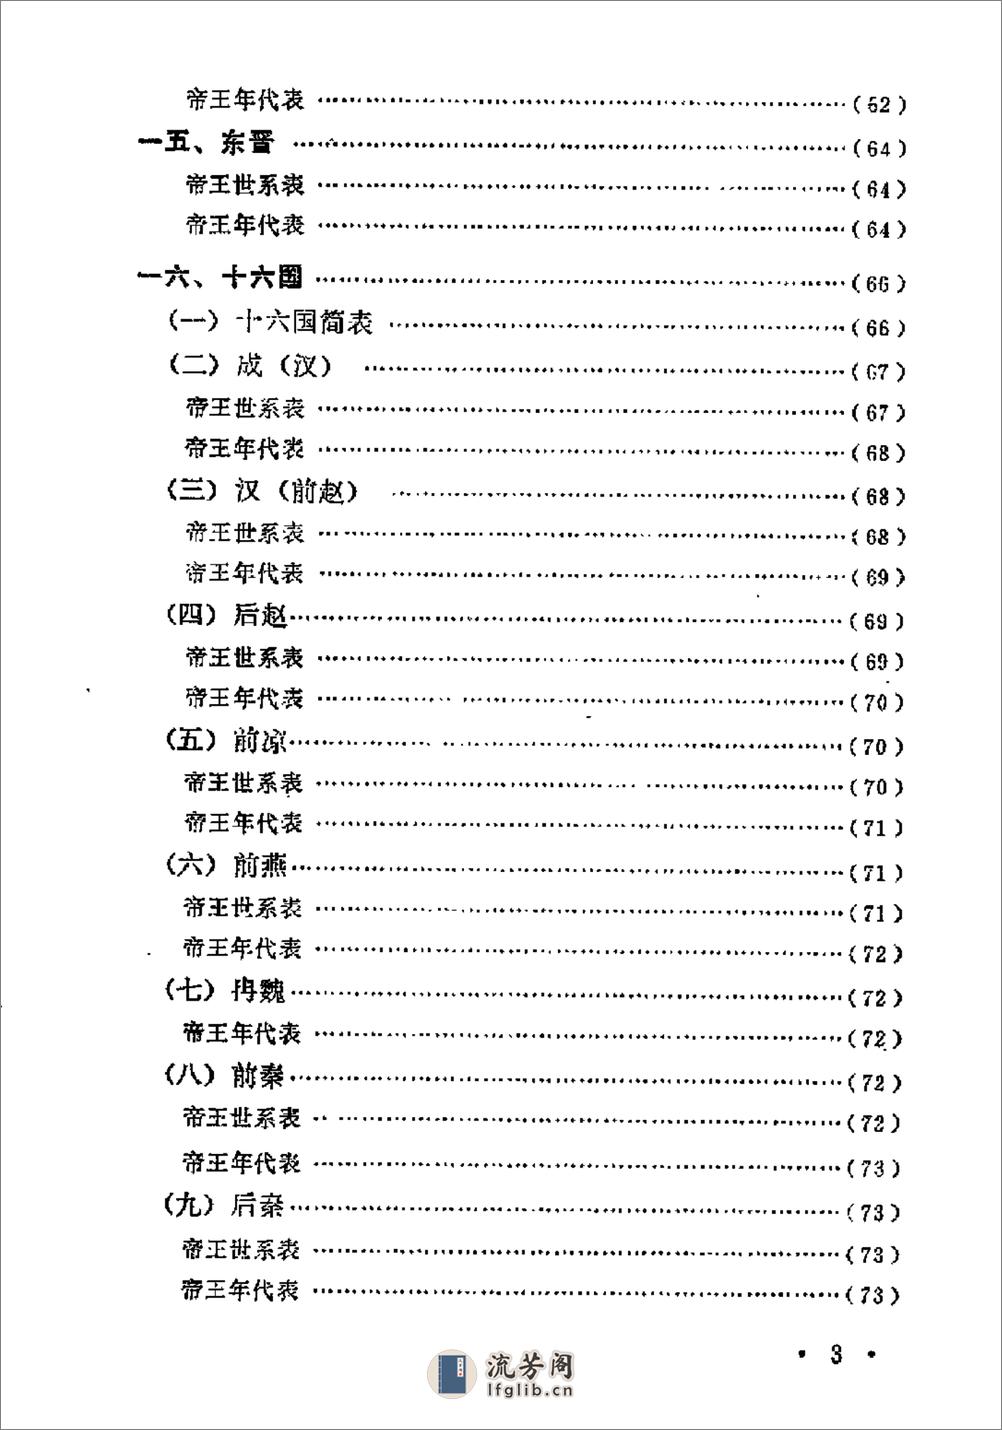 中国历史纪年简表·陈作良·中央党校1985 - 第6页预览图